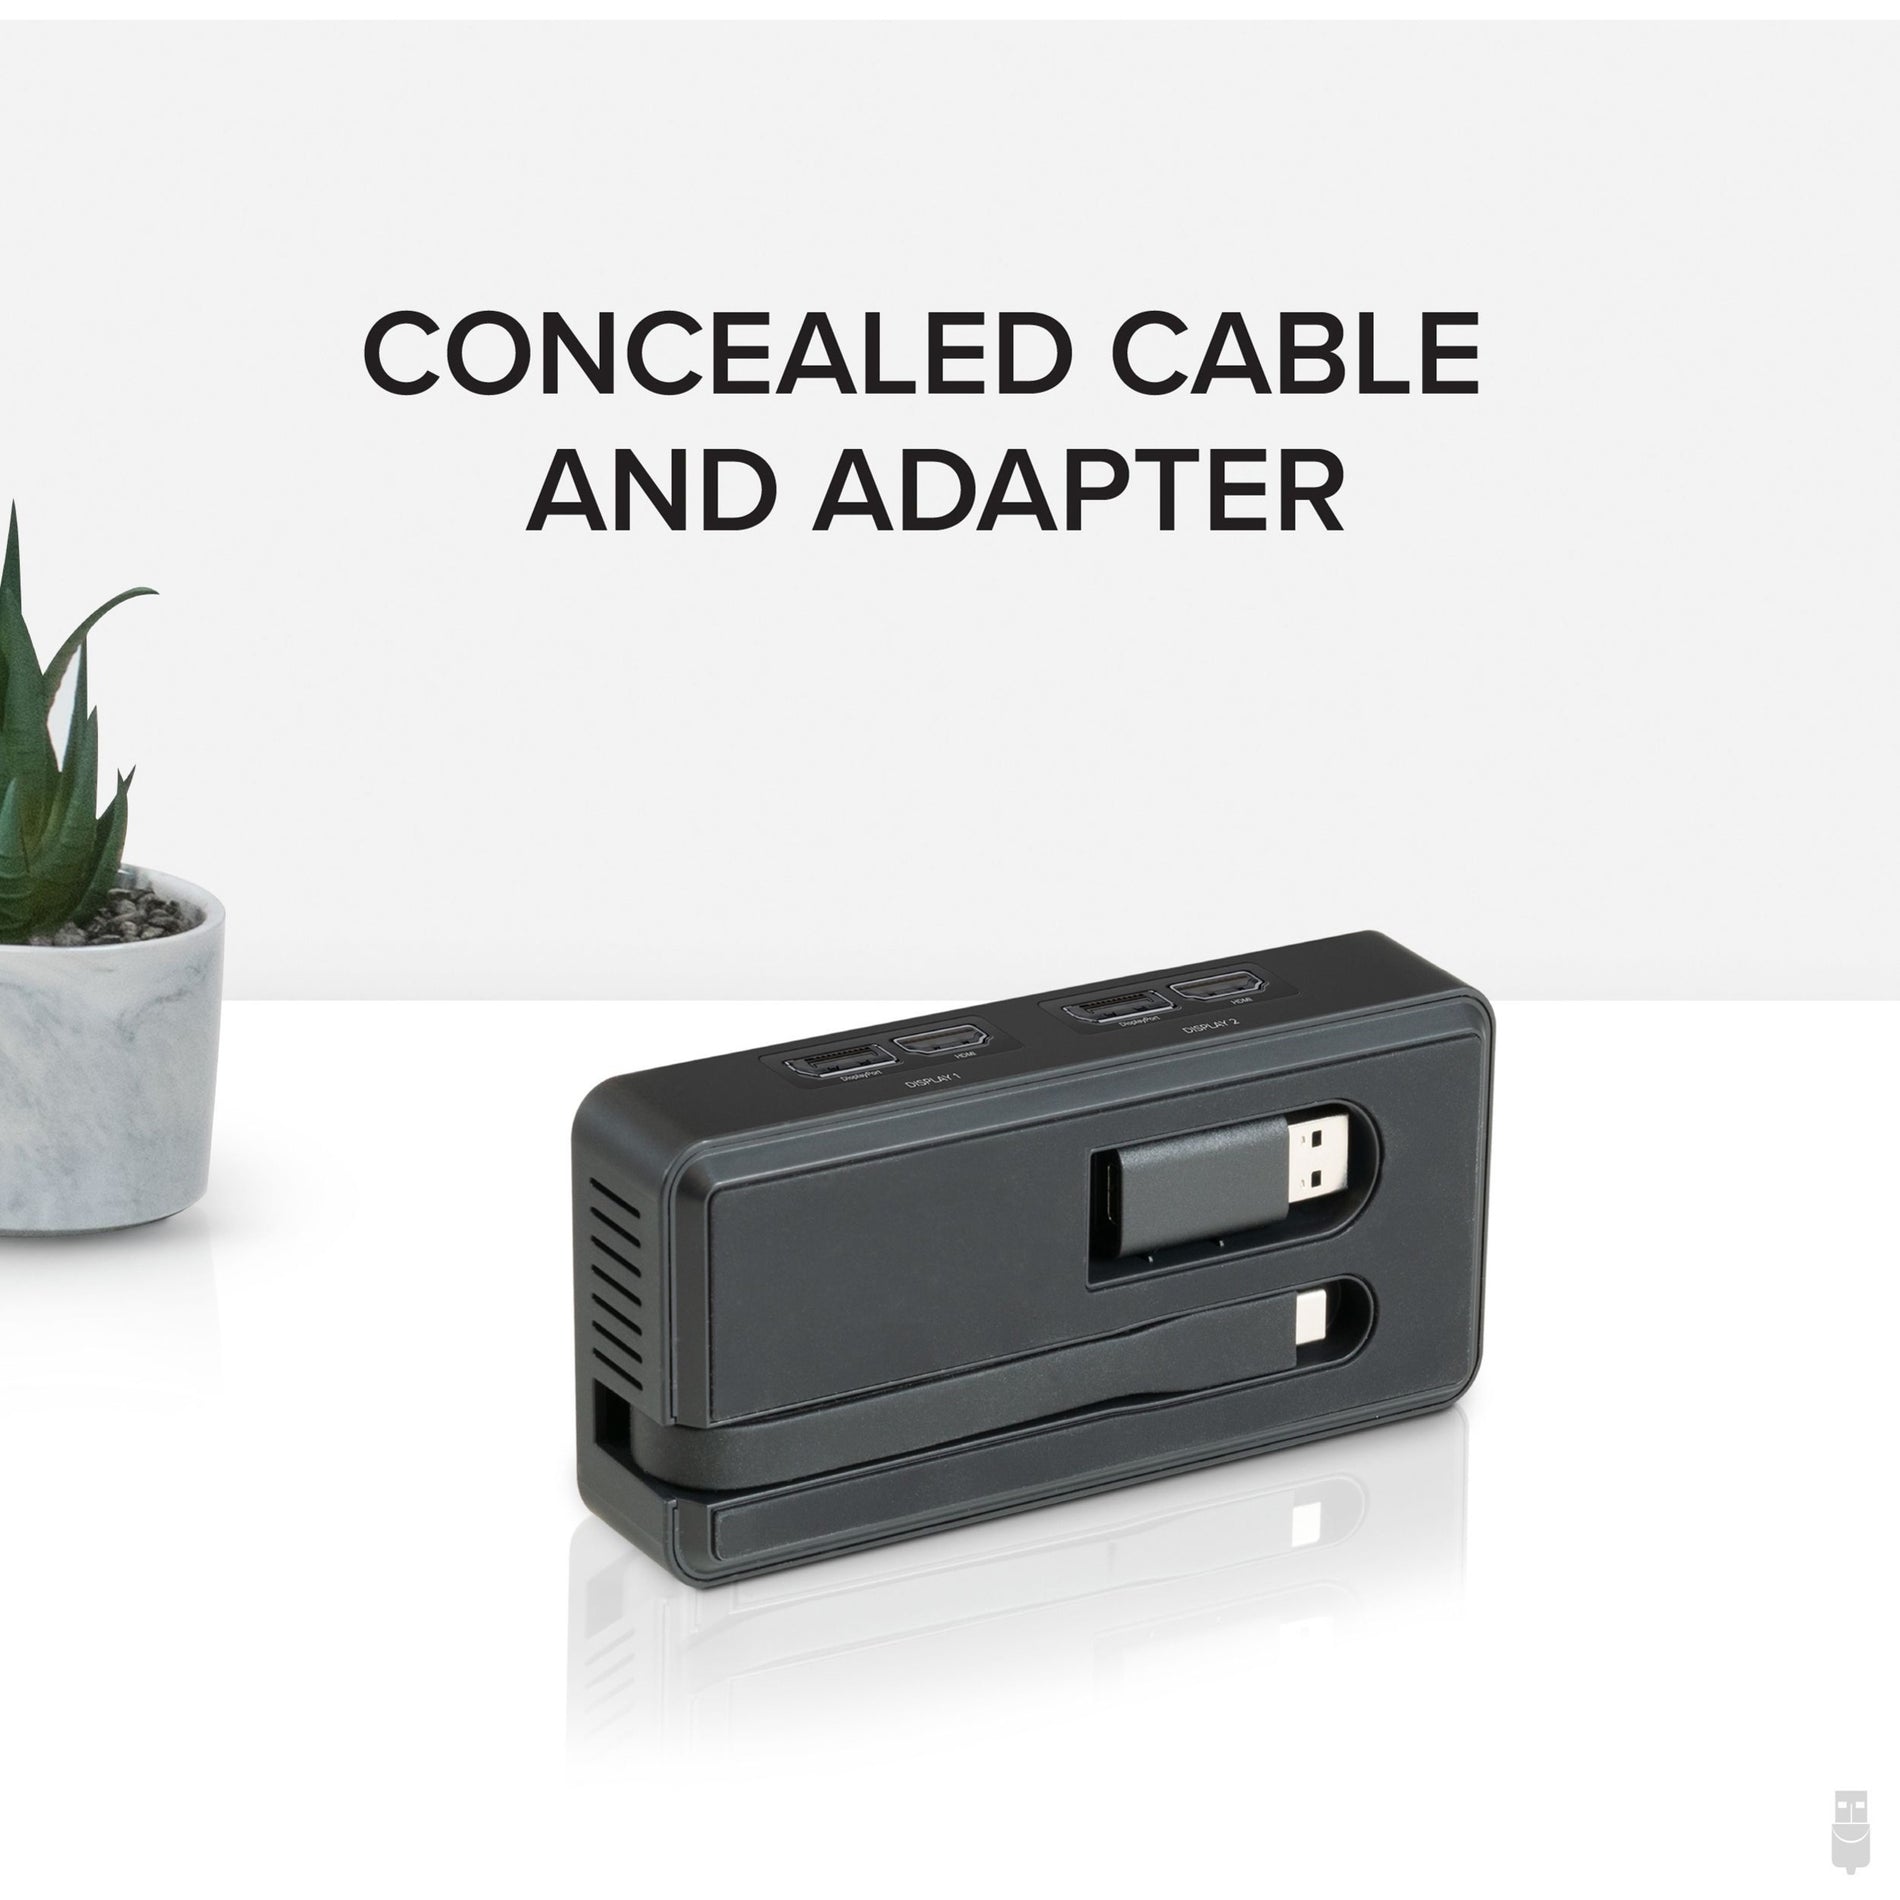 プラガブル USBC-6950U USB 3.0およびUSB-C 4K DisplayPortおよびHDMIデュアルモニターアダプター、簡単に複数のモニターを接続できます。 - プラガブル - プラガブル